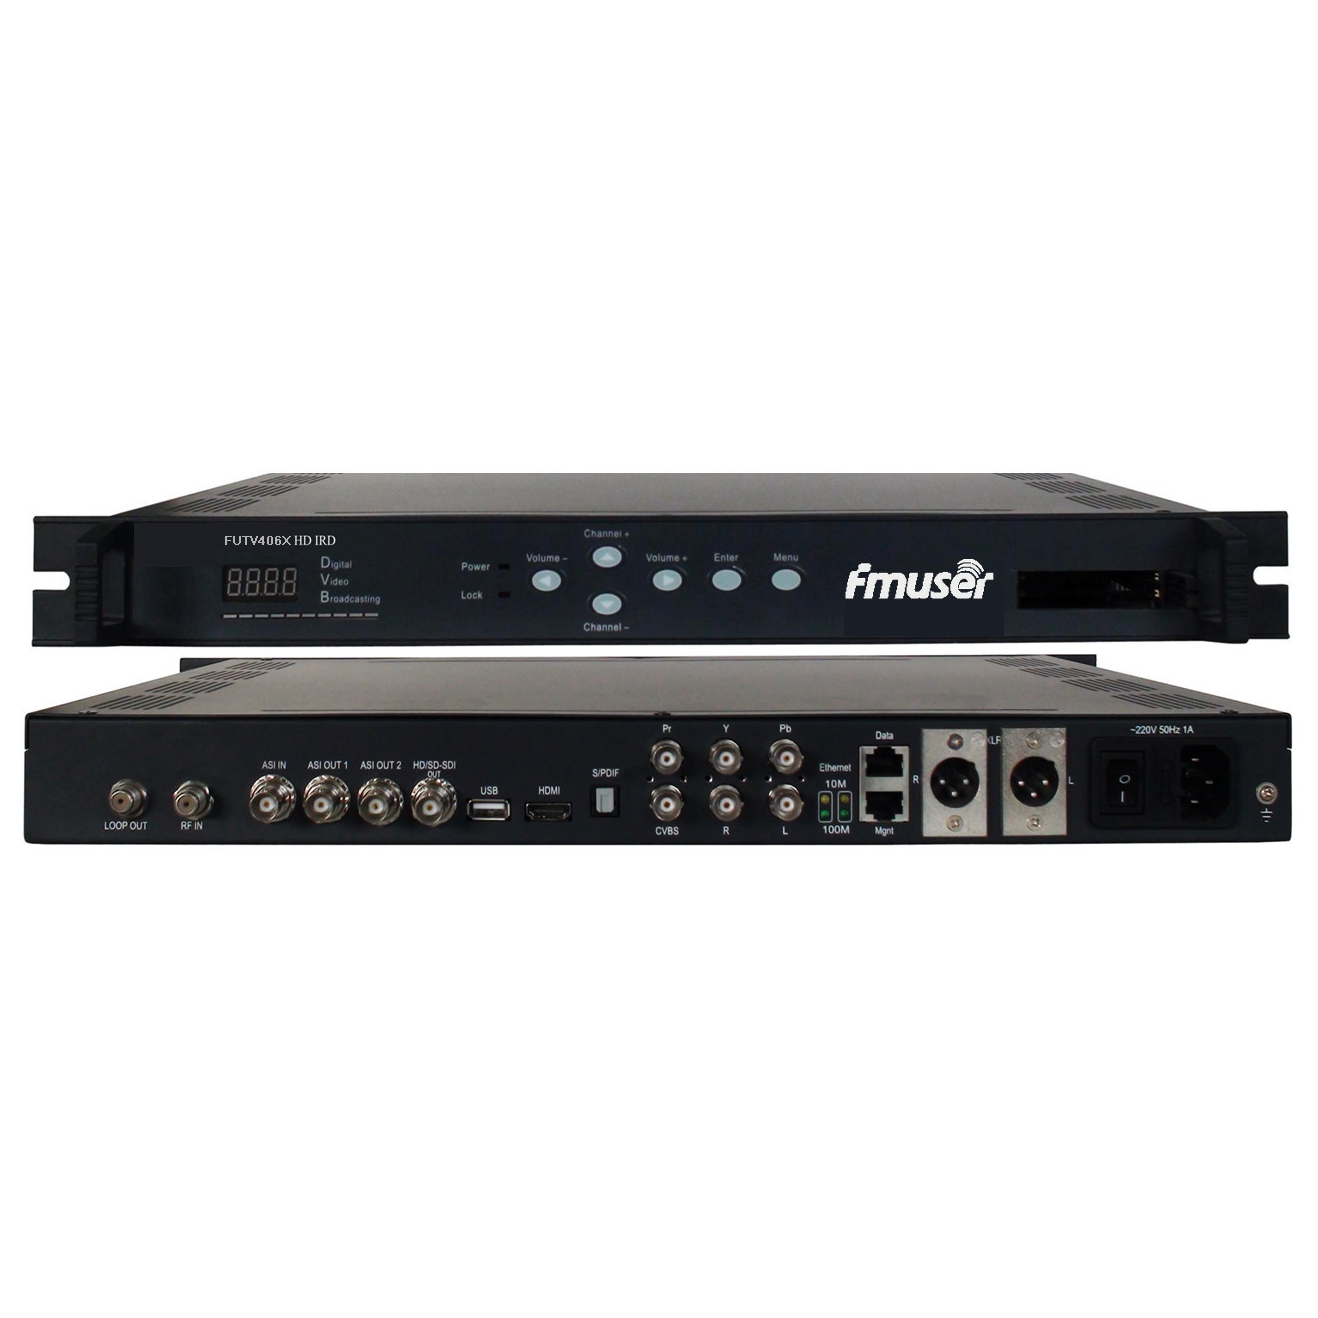 FMUSER FUTV406X HD IRD (1 DVB-S / S2 / T / C, קלט ISDB-T RF, 1 אסי IP ב, פלט IP 2 אסי 1, HDMI SDI CVBS XLR Out) עם MUX & ביס